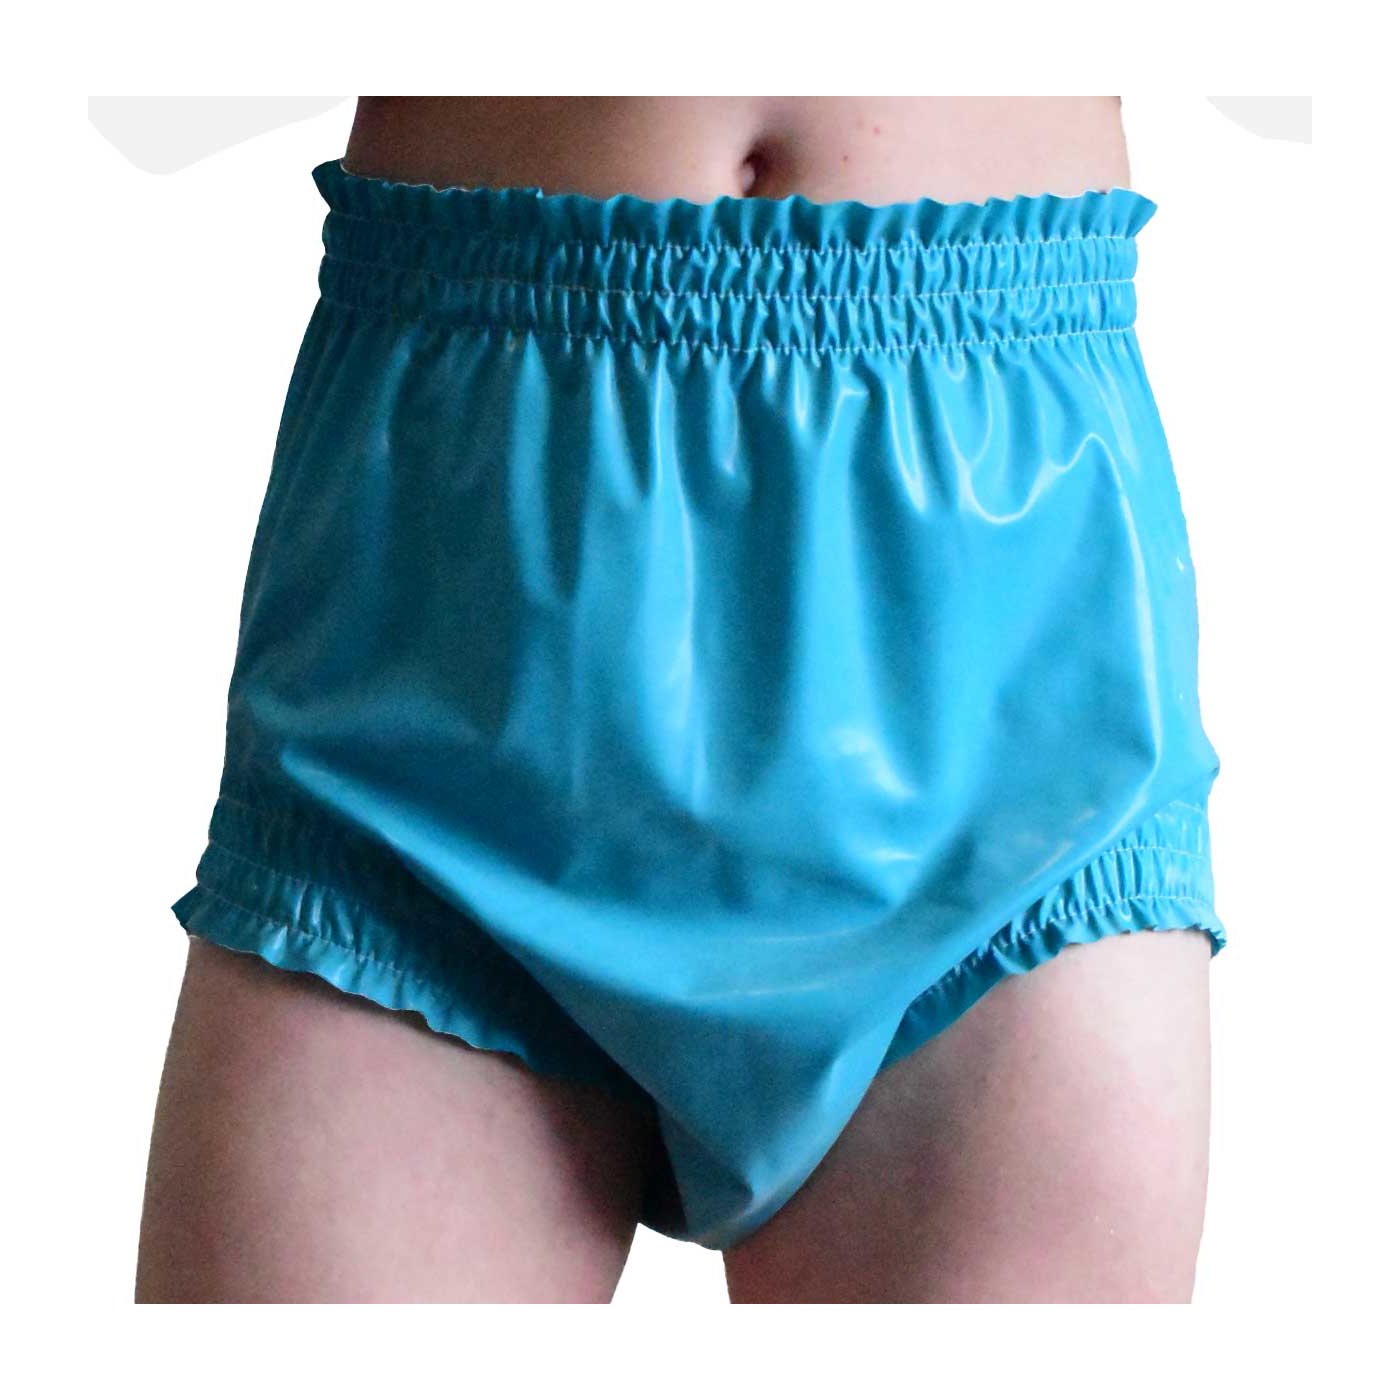 panties for Adulte by Big Kiddyfee